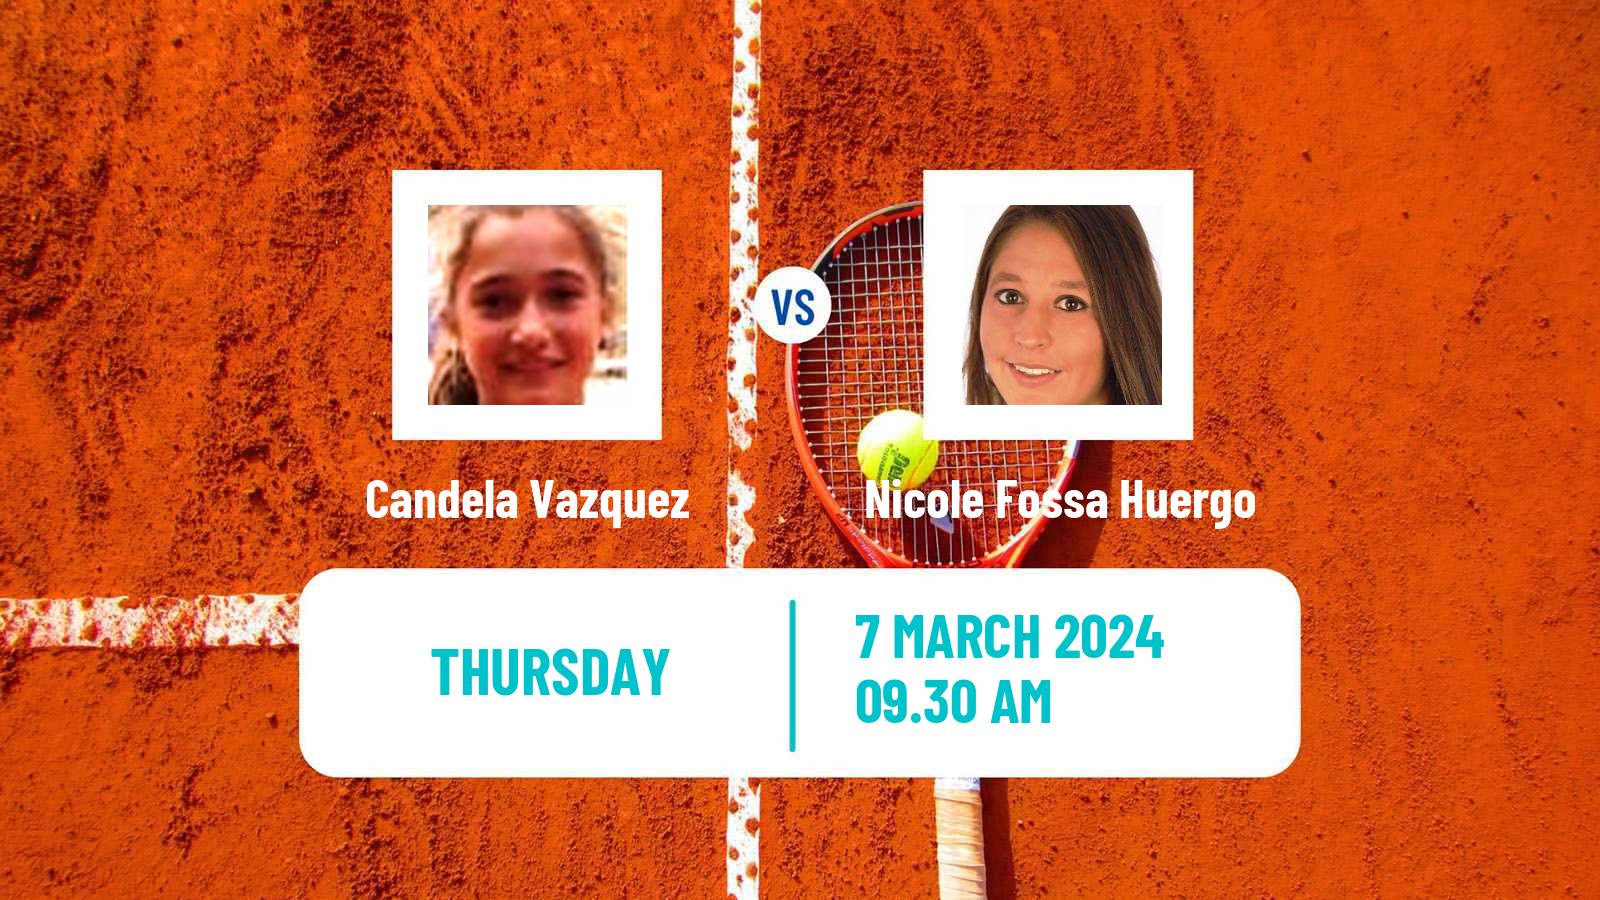 Tennis ITF W15 Cordoba Women Candela Vazquez - Nicole Fossa Huergo